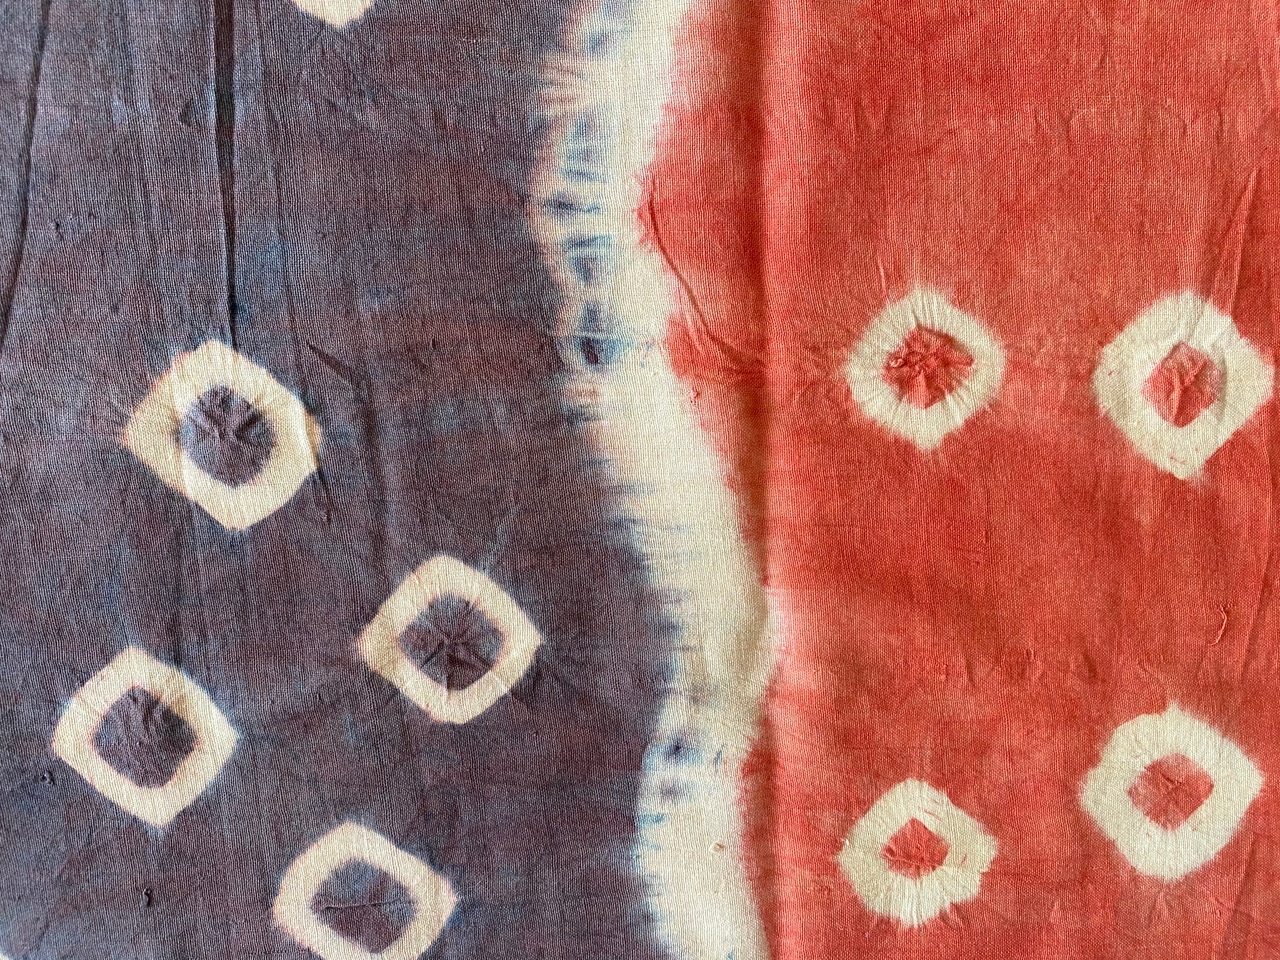 ‘pelangi’ tie-dyed textile from Toraja Land